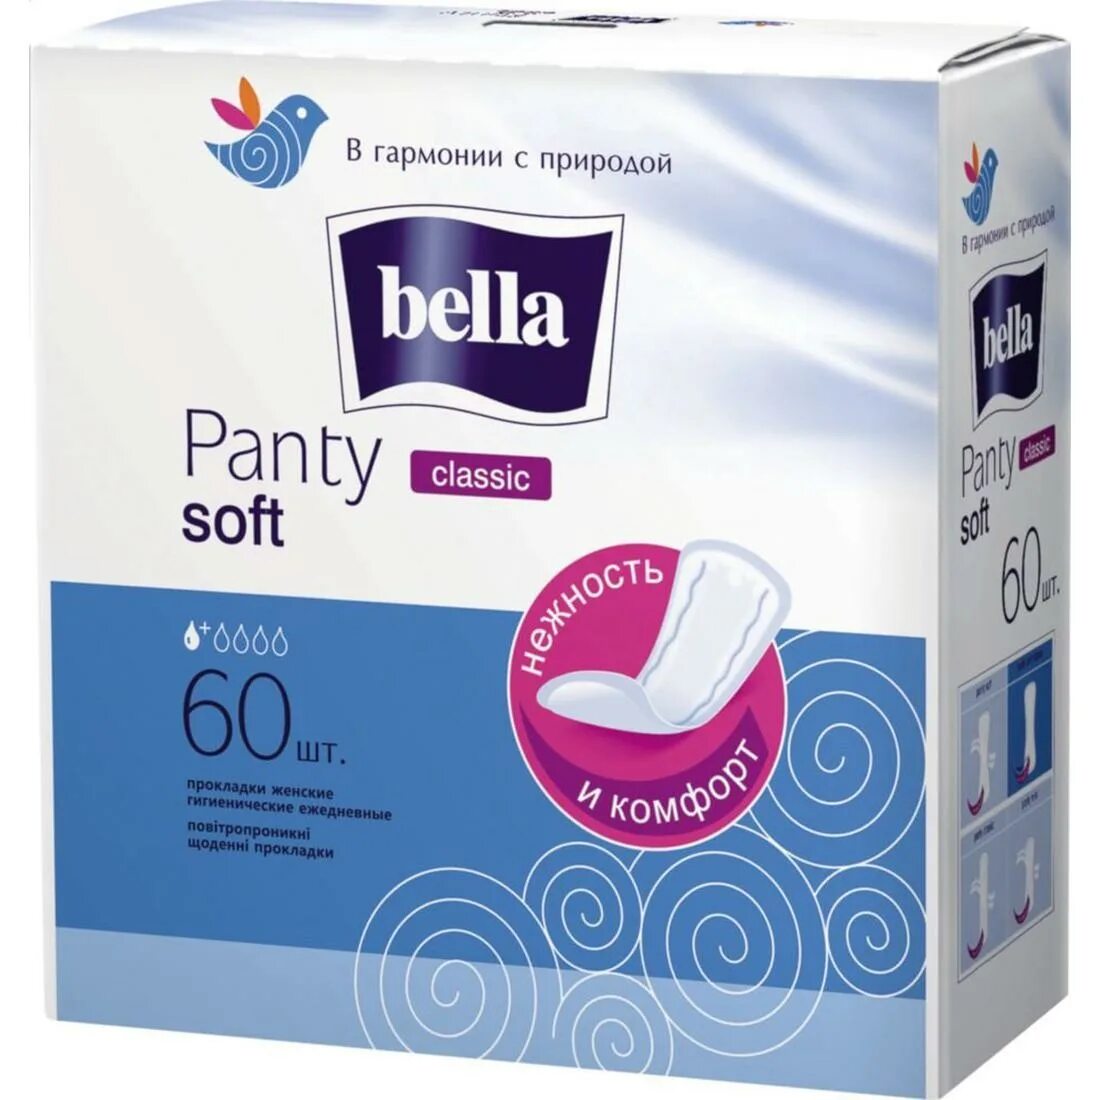 Прокладки купить нижний новгород. Bella panty Soft ежедневные прокладки 60 шт. Прокладки Bella panty Soft 60 шт. Прокладки ежедневные Bella panty Soft Classic 20шт. Ежедневные прокладки "panty Soft", Bella, 60+10 шт.